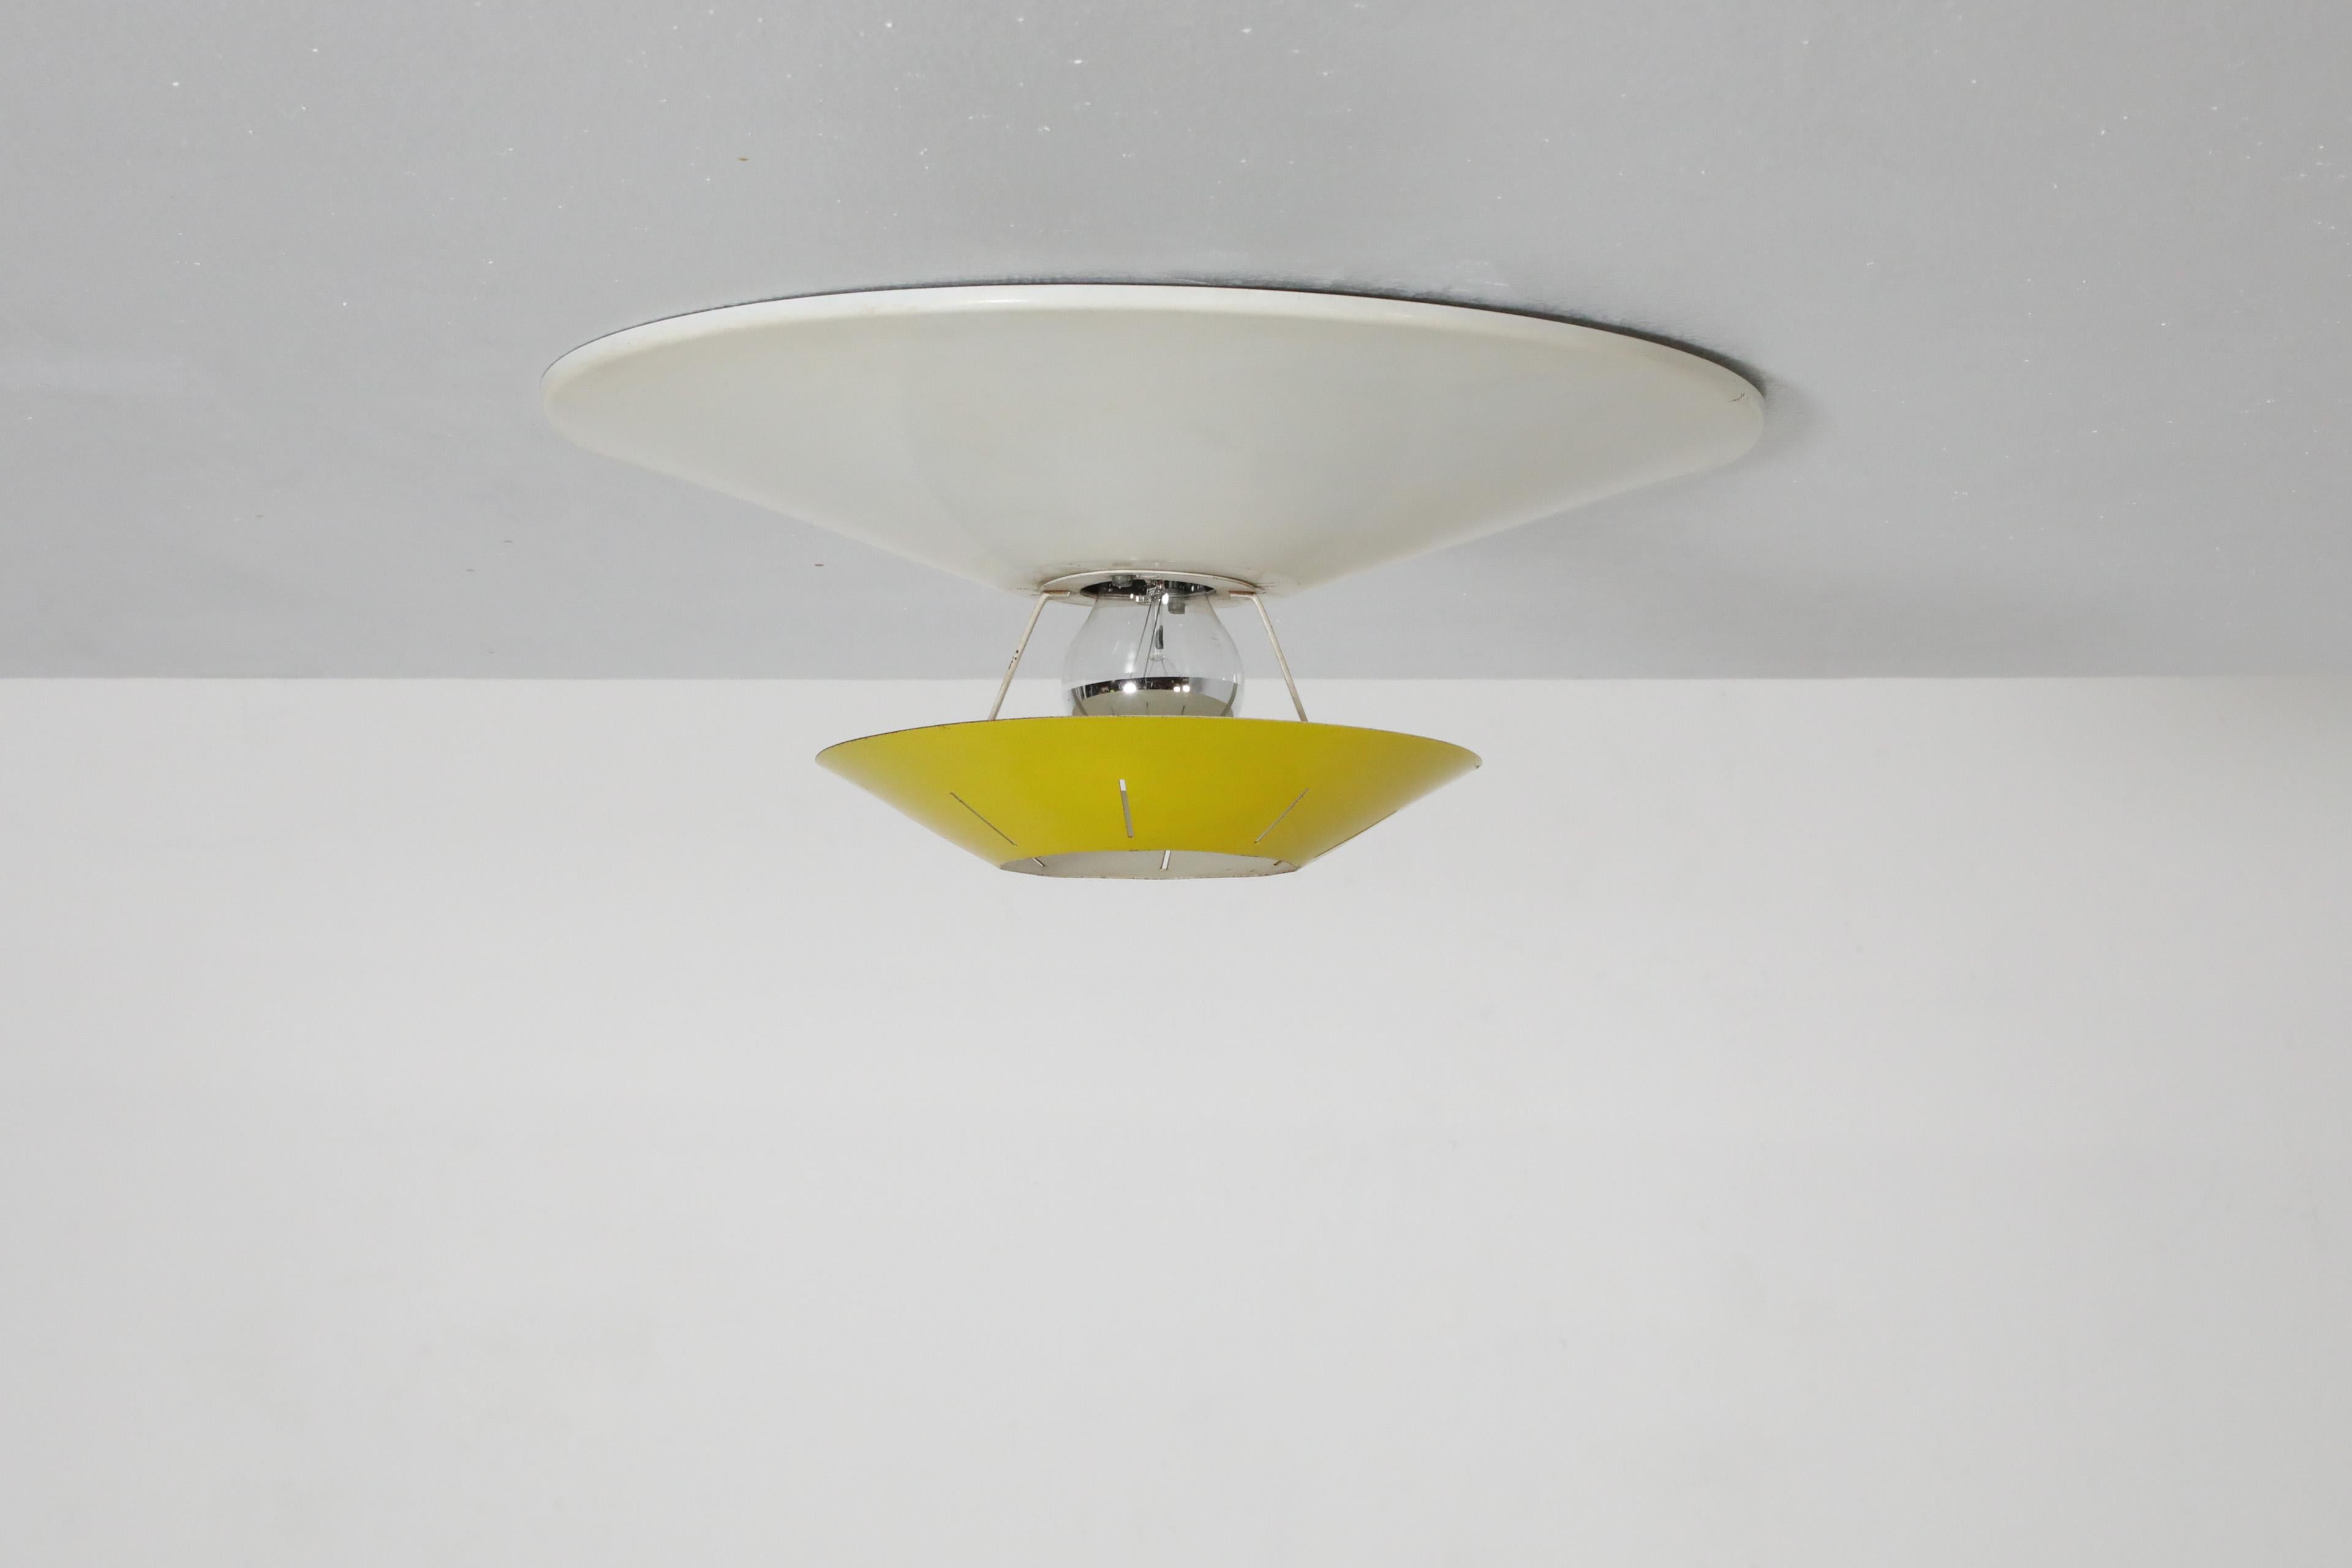 Plafonnier hollandais en métal émaillé jaune et blanc du milieu du siècle dernier, conçu par le grand designer d'après-guerre Louis Kalff pour la célèbre société Philips.  Le luminaire a une base en métal émaillé blanc et est encastré. L'abat-jour